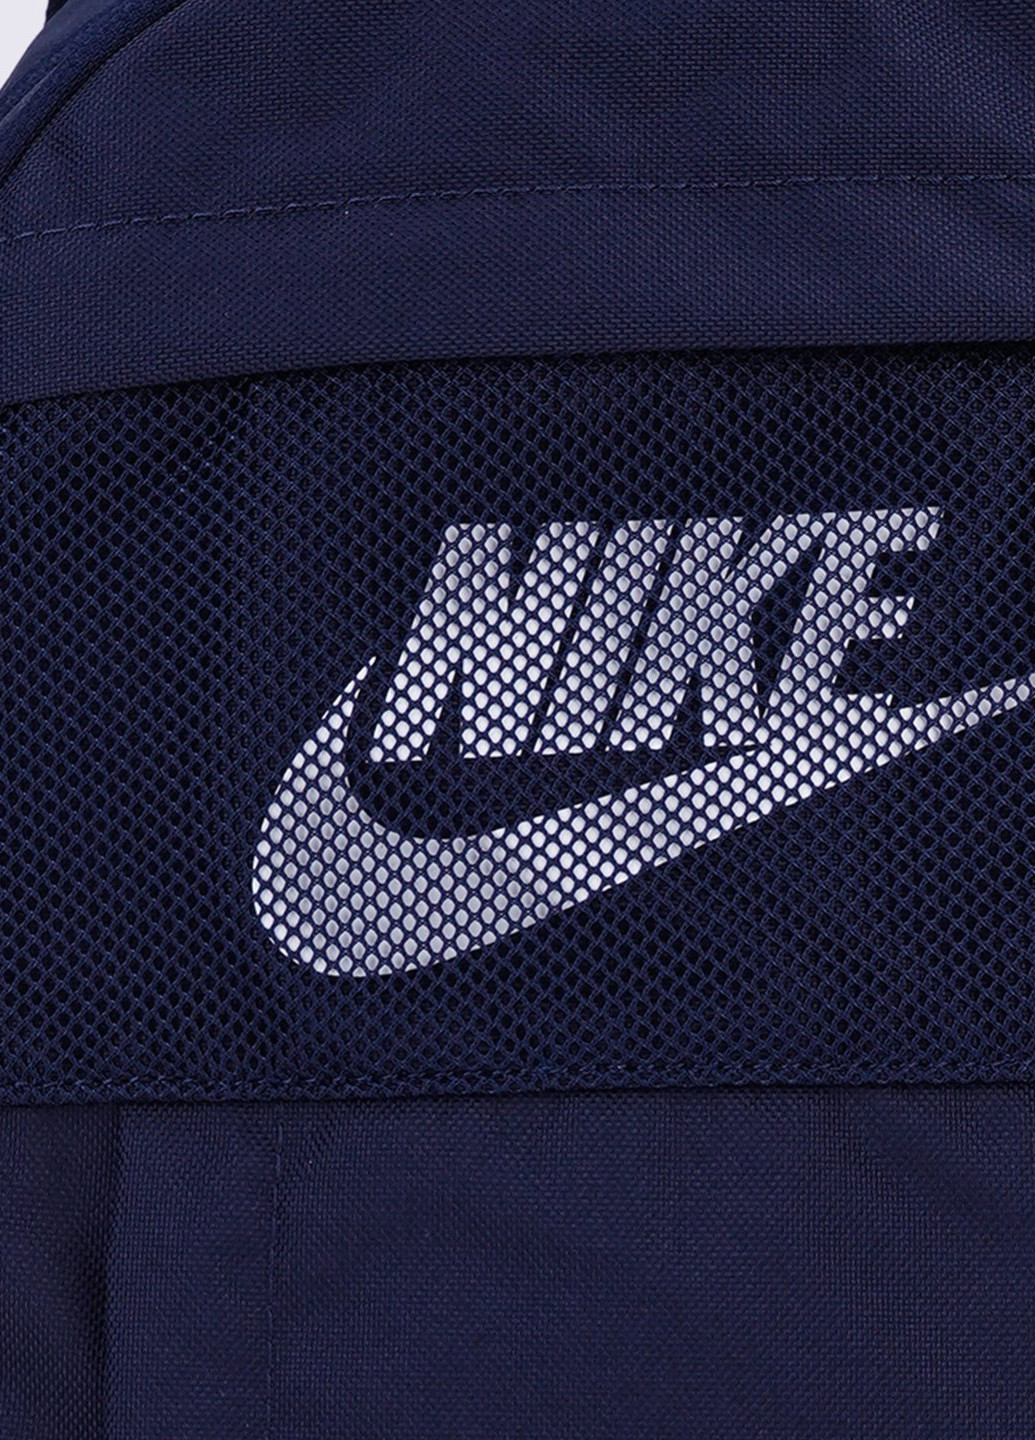 Рюкзак Nike (210206291)